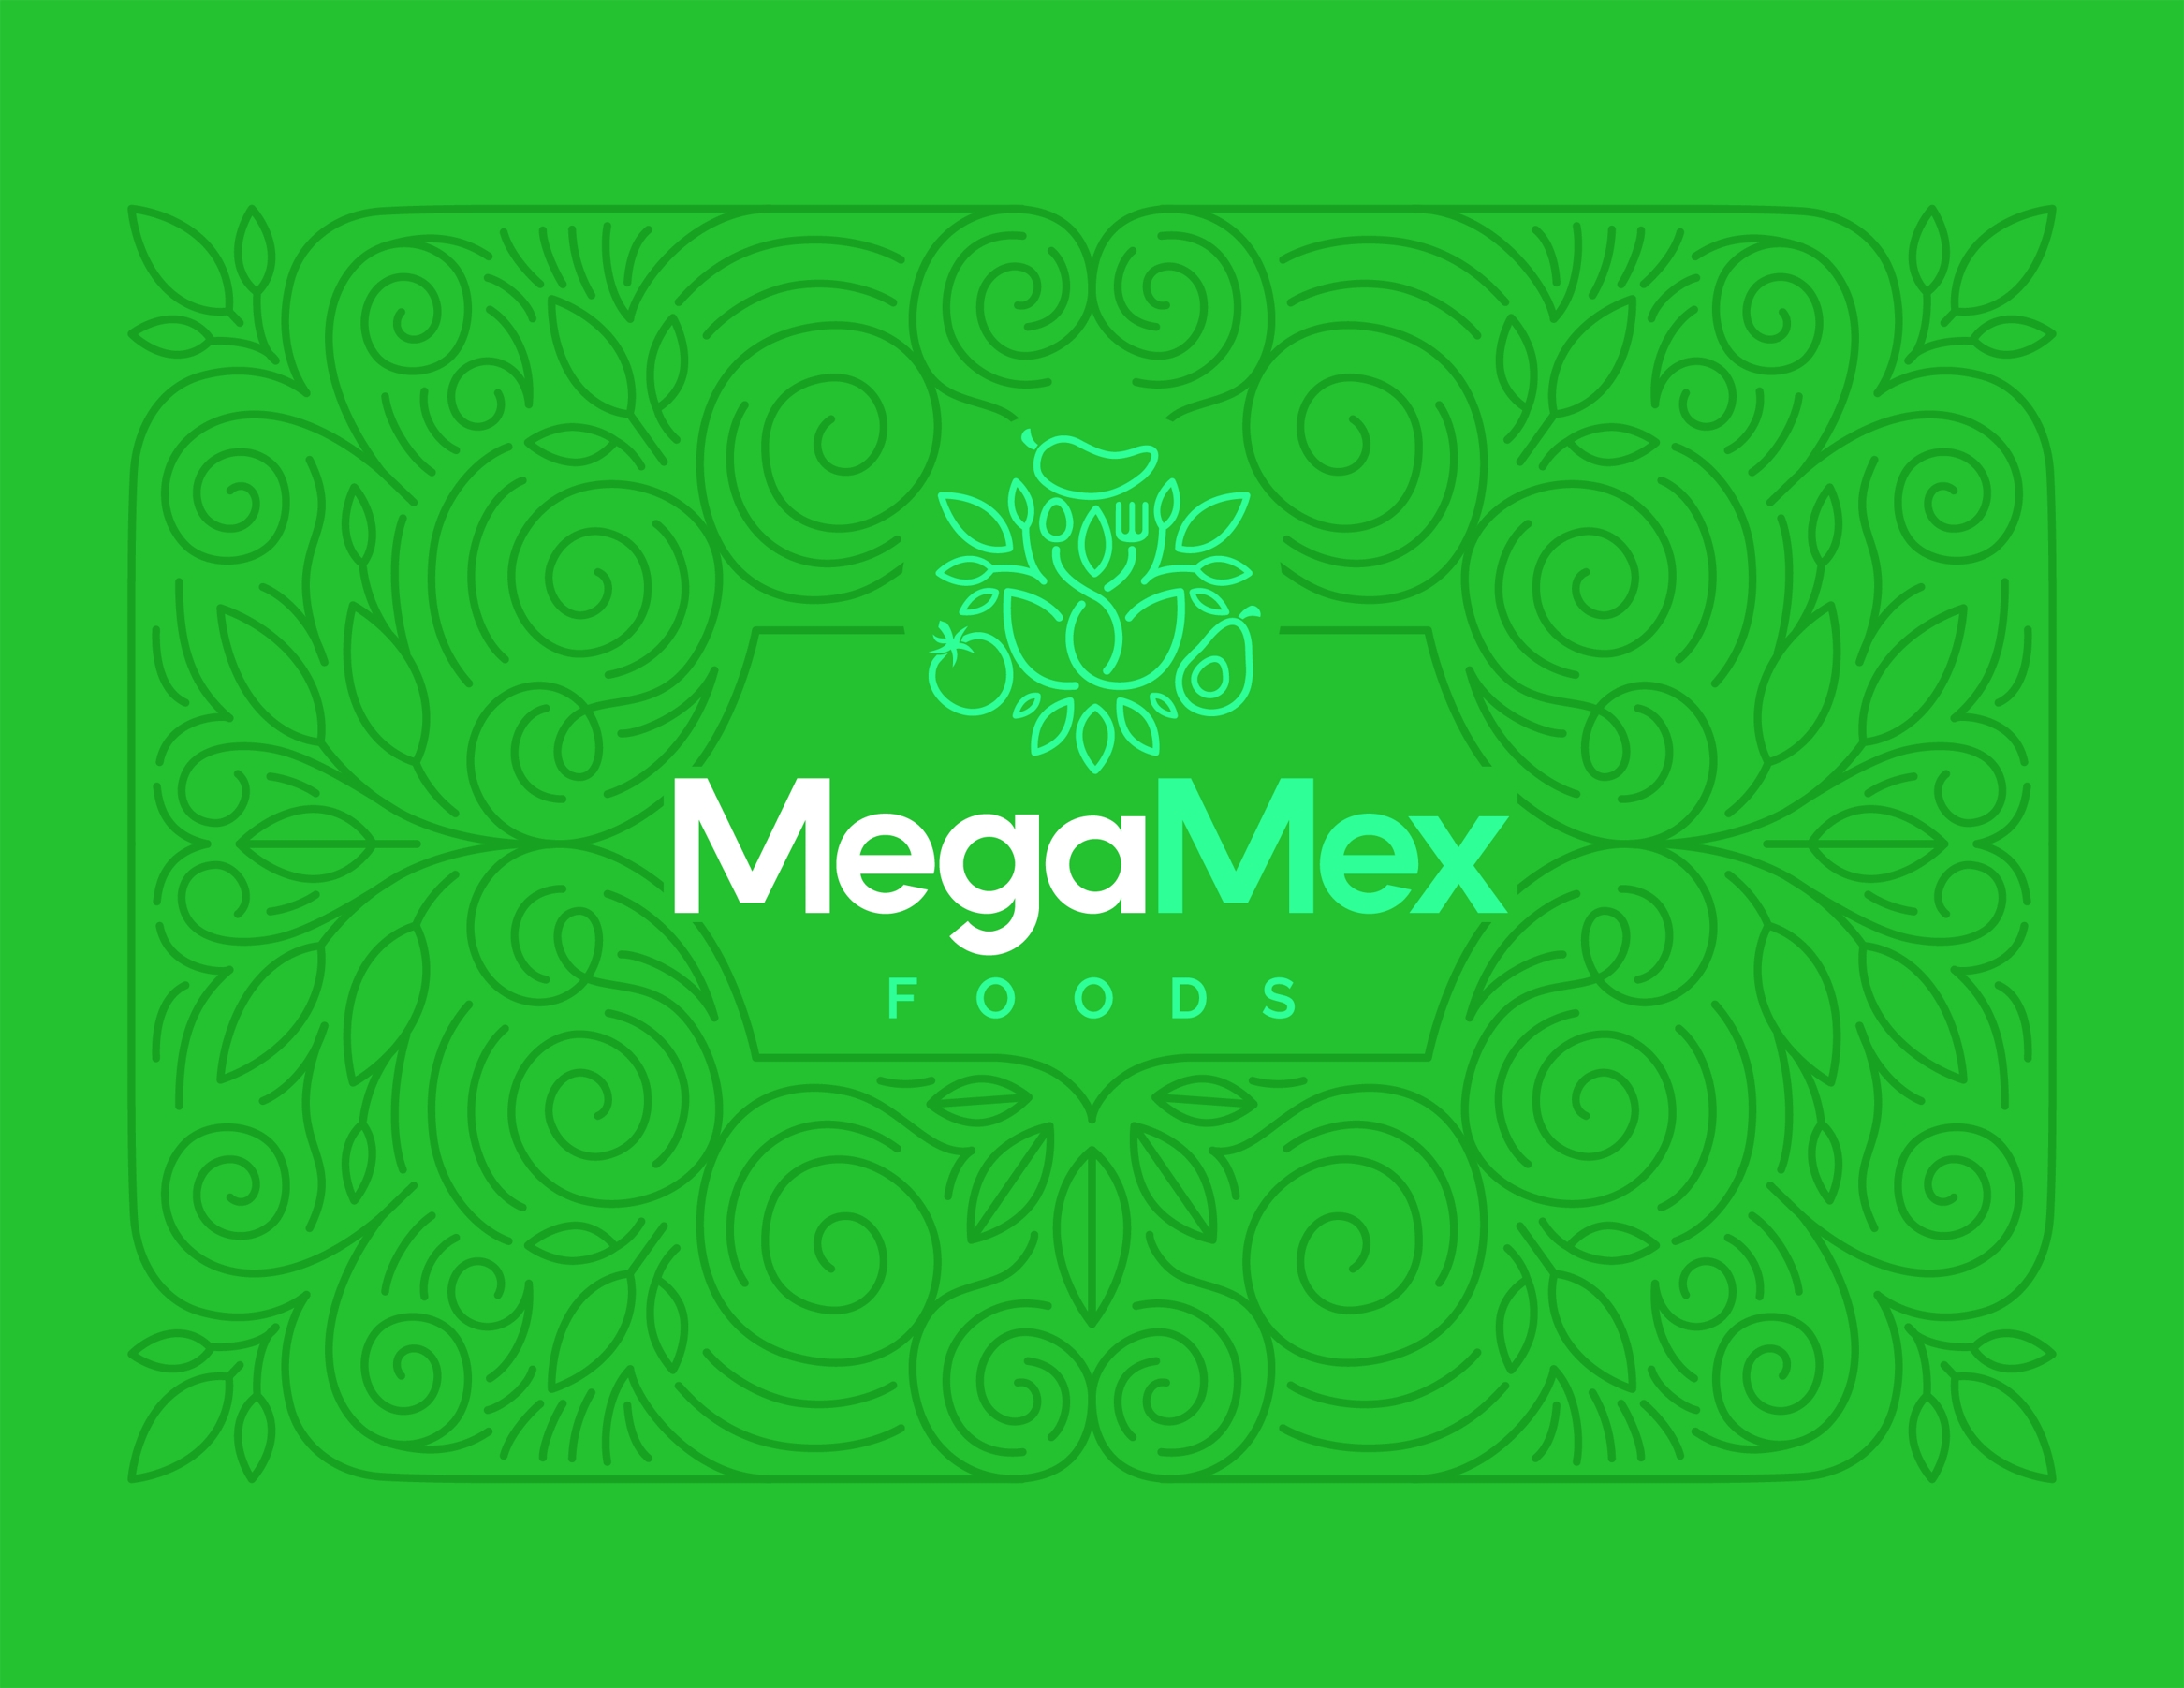 MegaMex_Logo_OnBkrd_Green.jpg